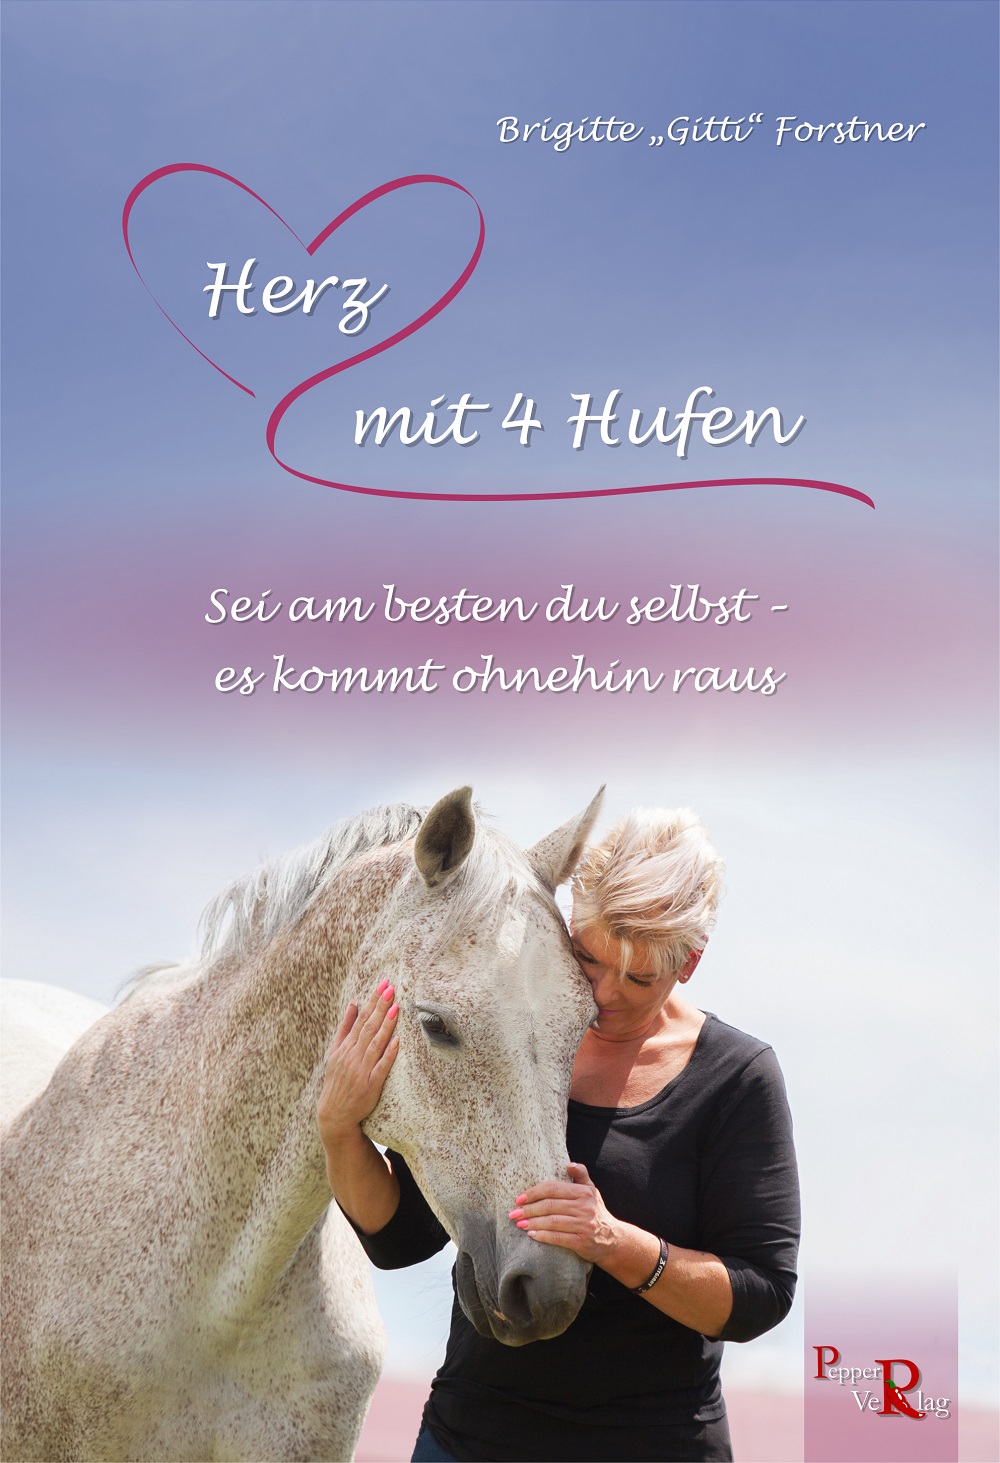 Brigitte "Gitti" Forstner: Herz mit 4 Hufen